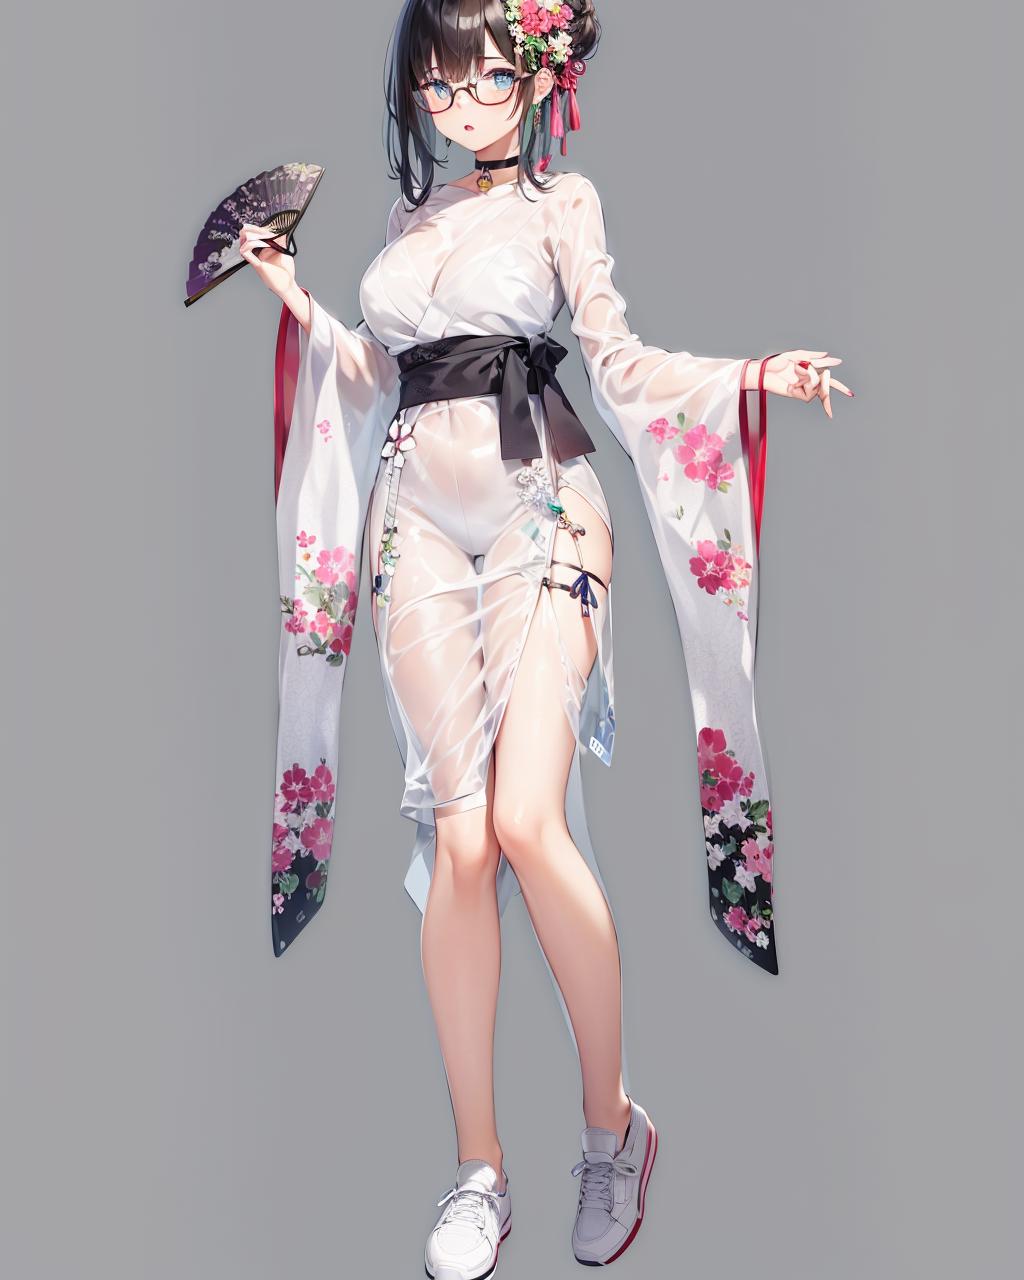 【Costume】See-Through Kimono (With multires noise version) 透明和服 image by rerorerorero